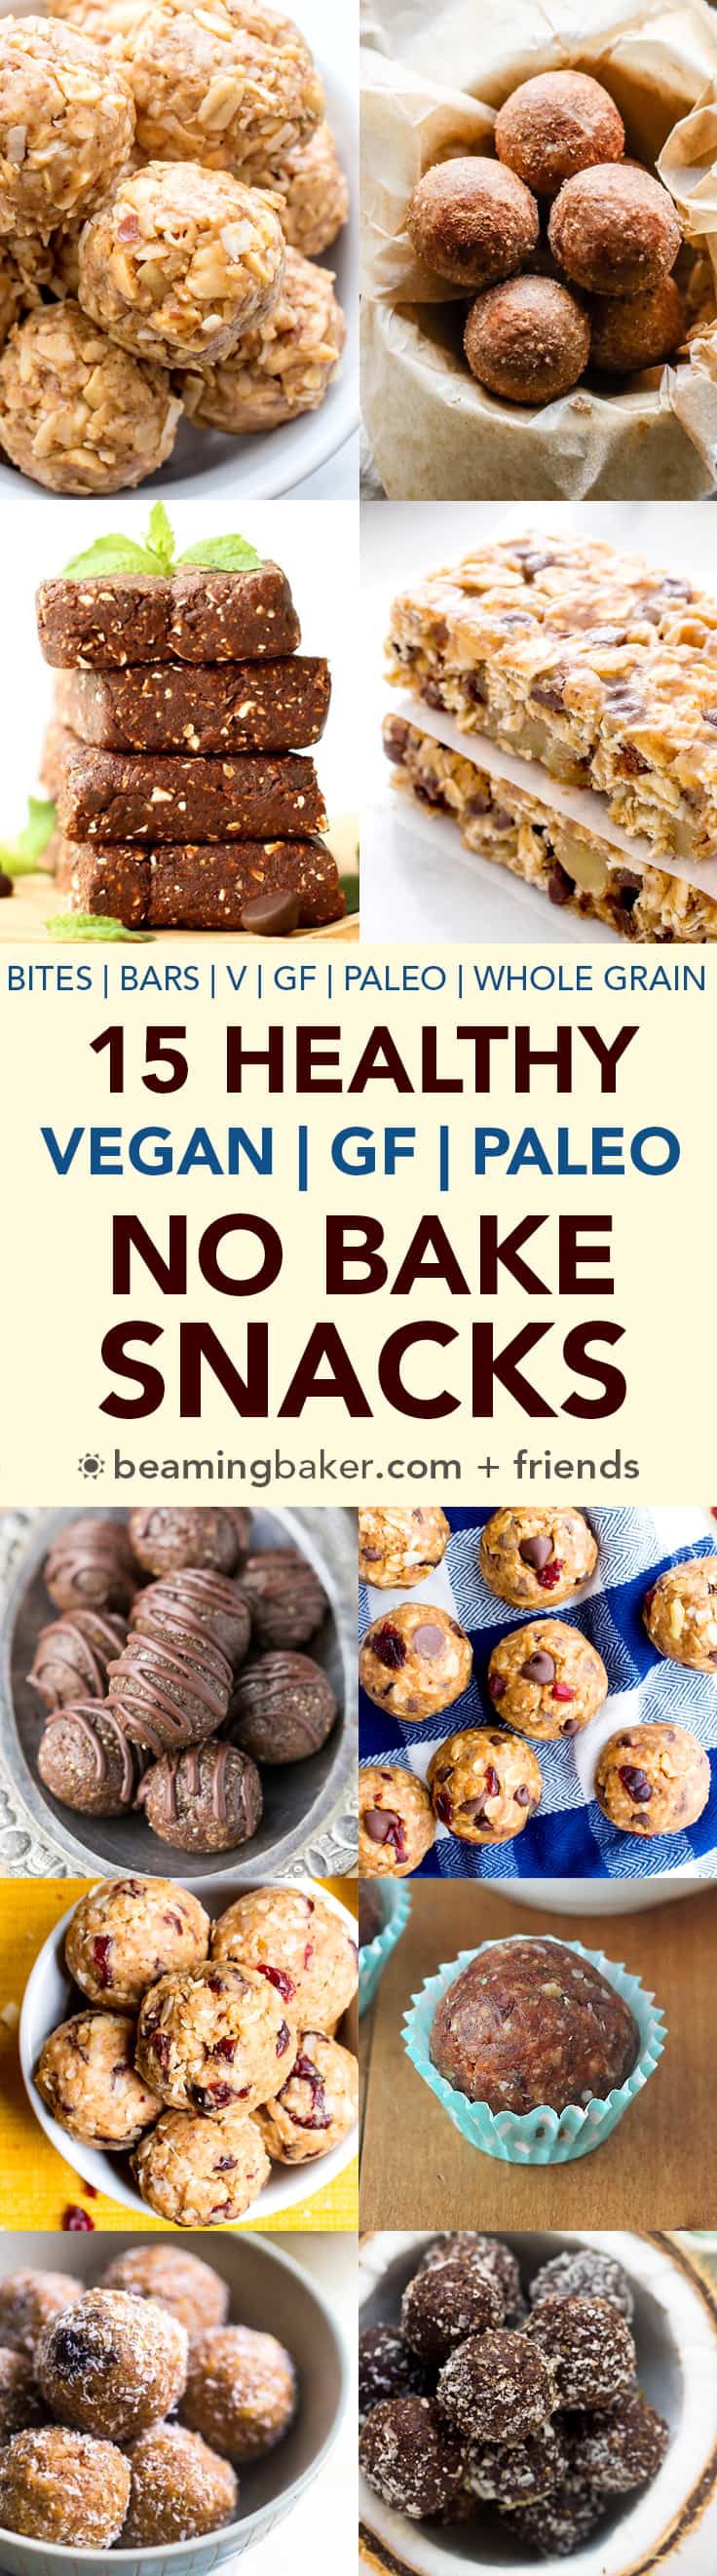 15 Healthy Gluten Free Vegan No Bake Snacks V Gf Paleo Beaming Baker,Streusel Topping For Muffins